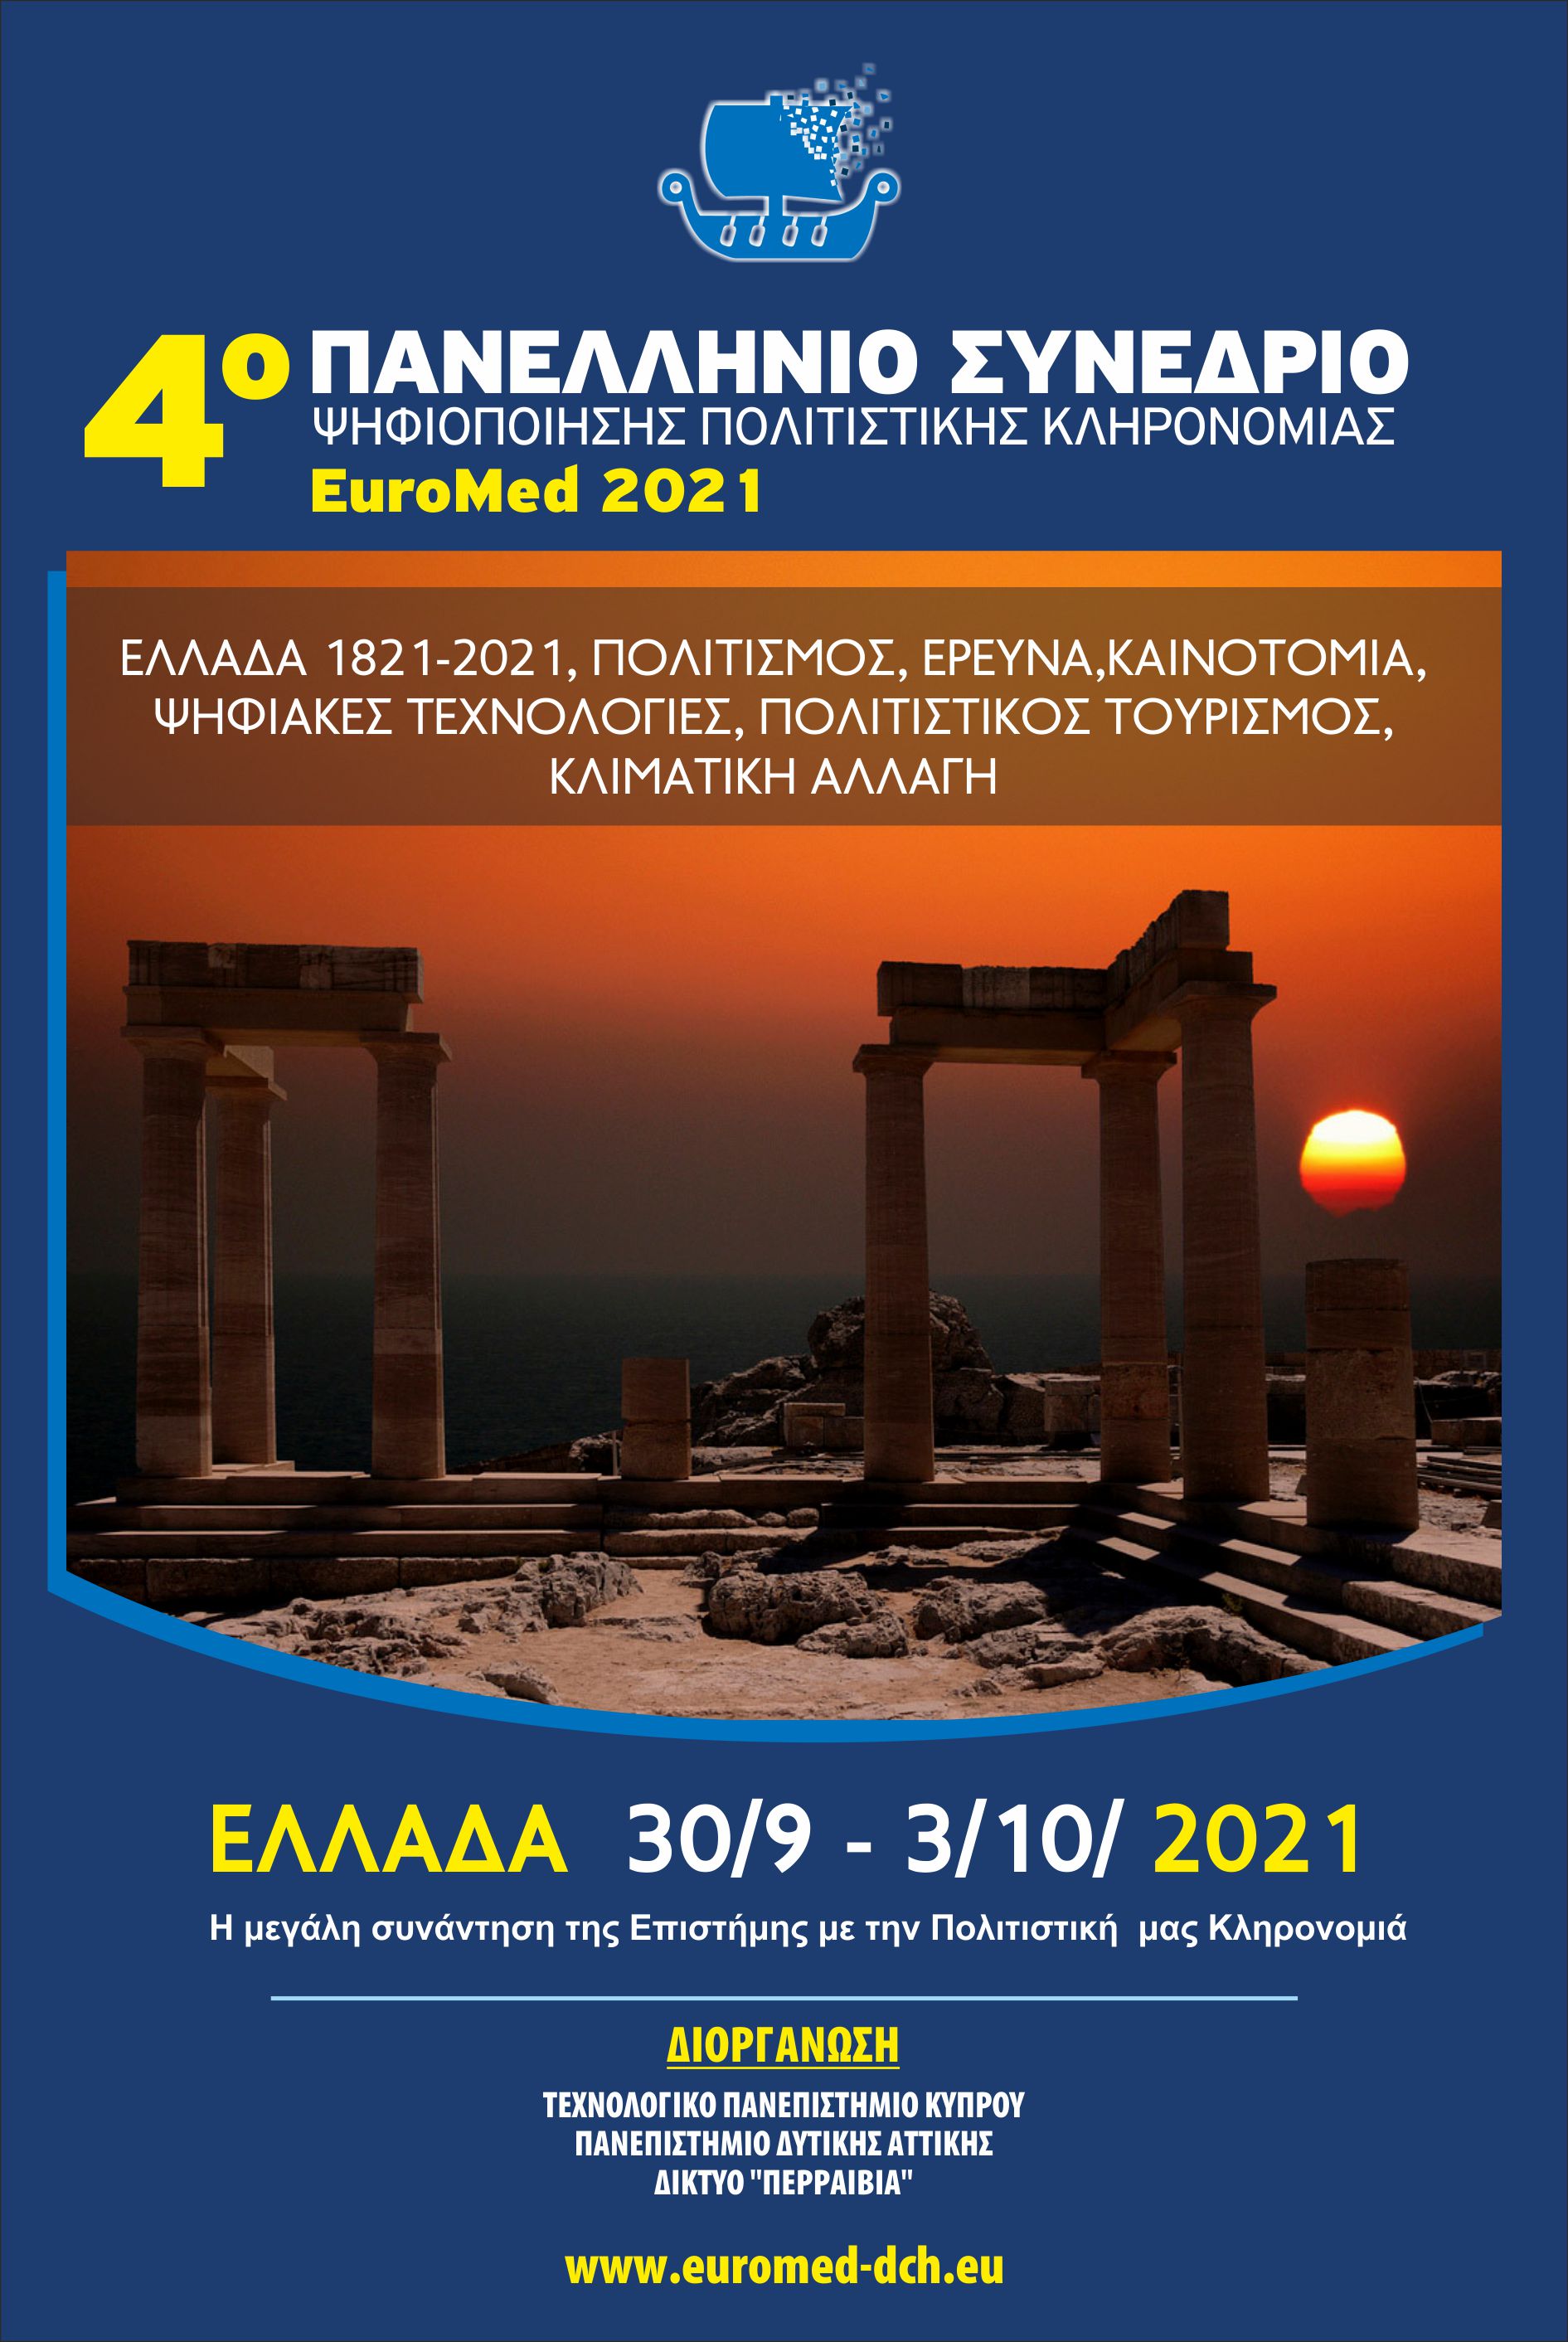 Ανακοινώθηκε για τη διοργάνωση του 4ου Παν-Αρμενικού Φόρουμ Ψηφιοποίησης Πολιτιστικής Κληρονομιάς-Euromed 2021